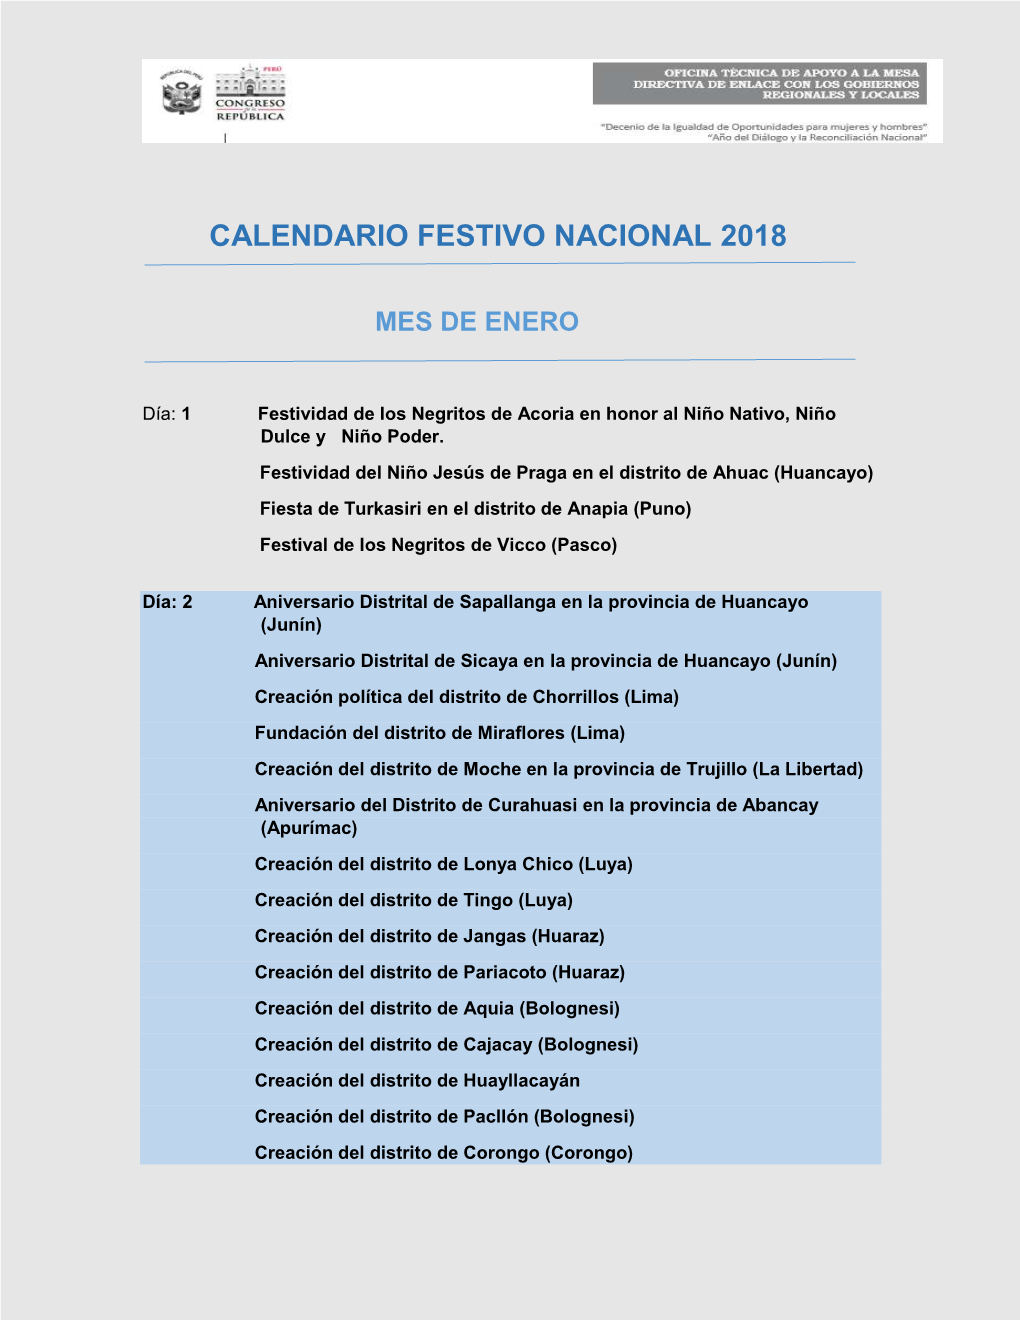 Calendario Festivo Nacional 2018